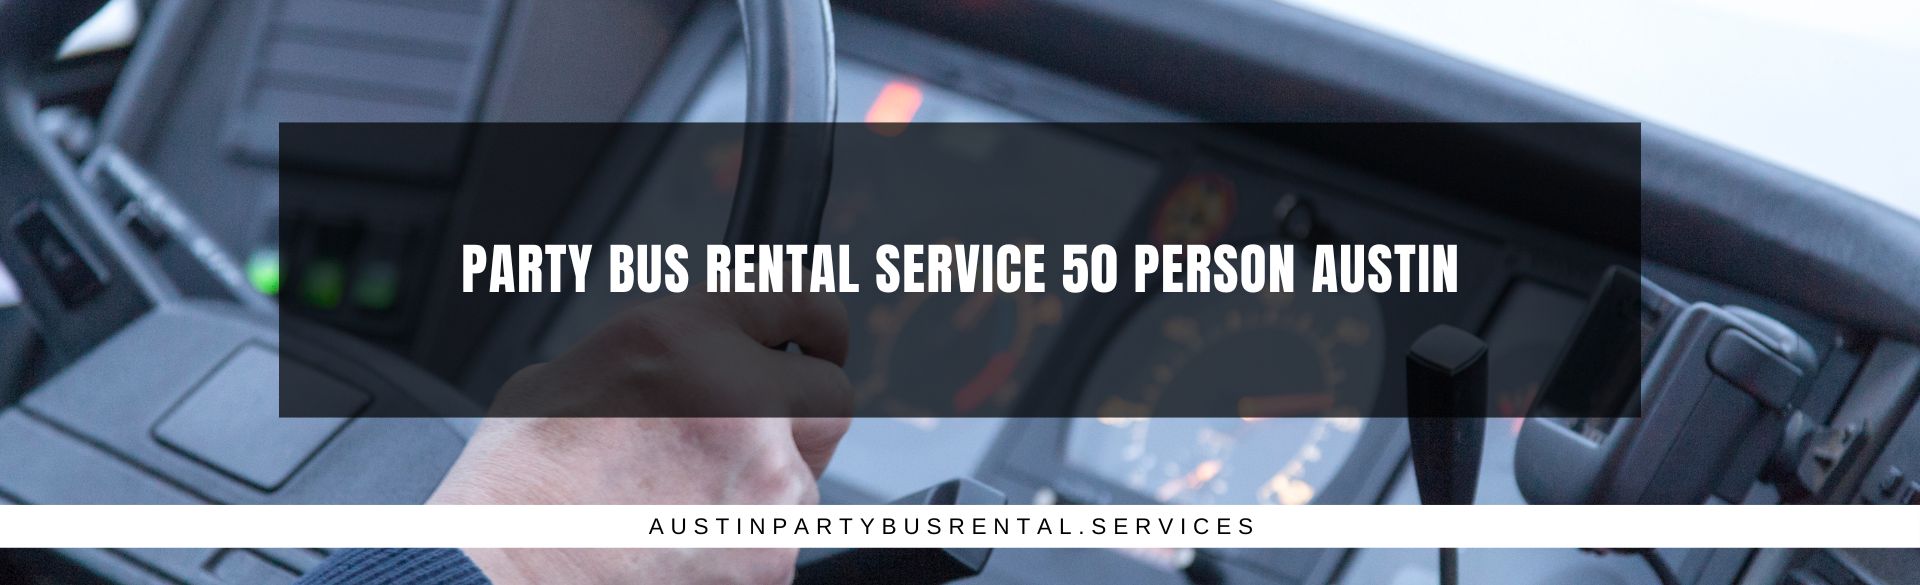 The Domain Party Bus - Austin Party Bus Rental